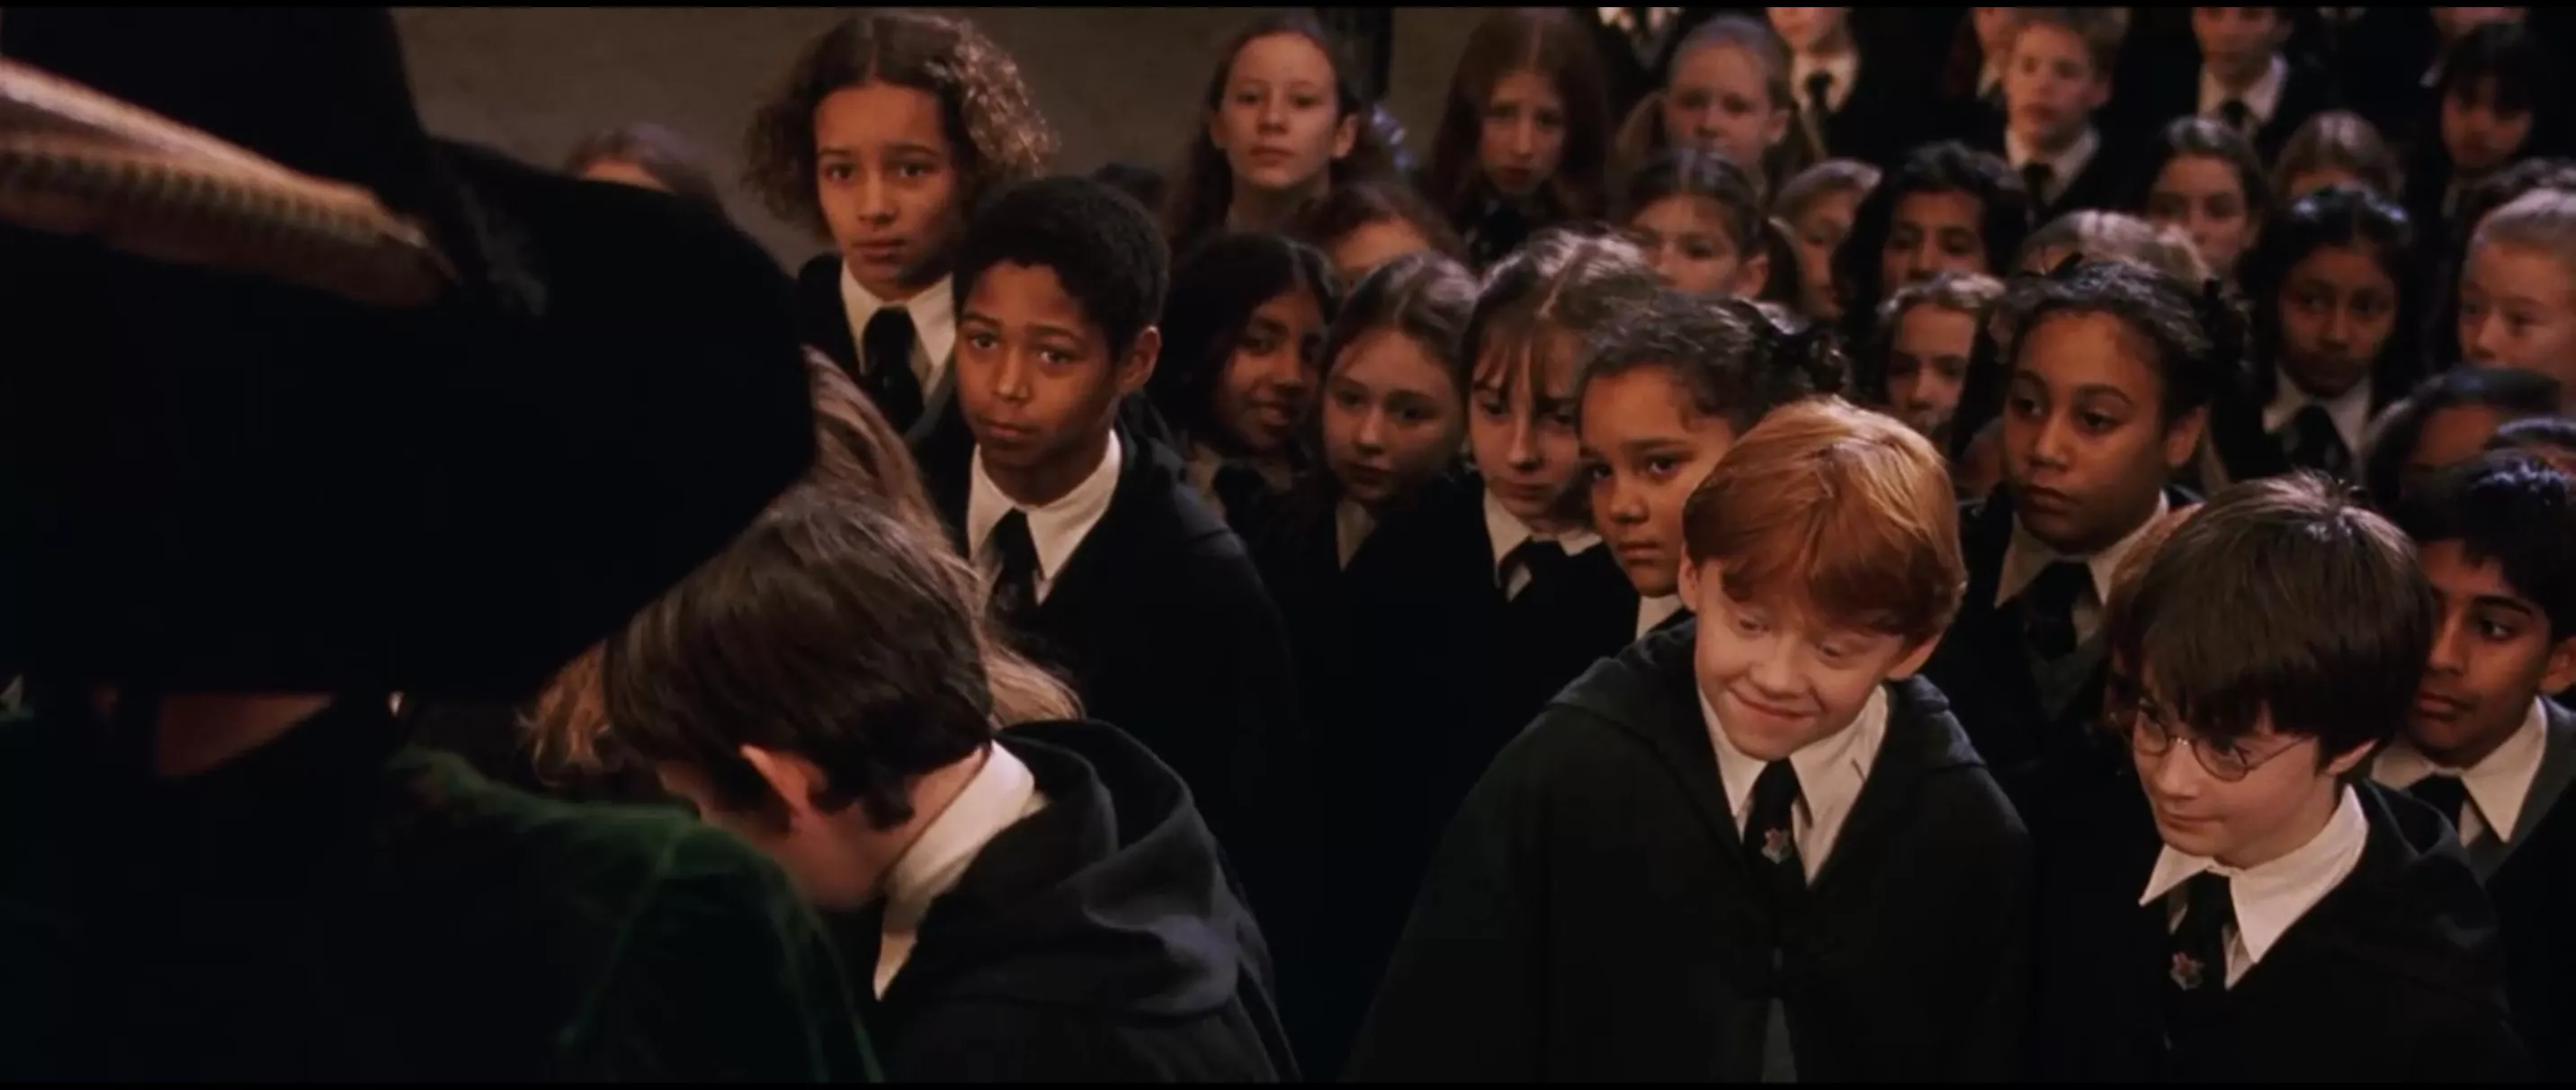 Сцена из первой части поттерианы, где профессор Макгонагалл встречает учеников Хогвартса